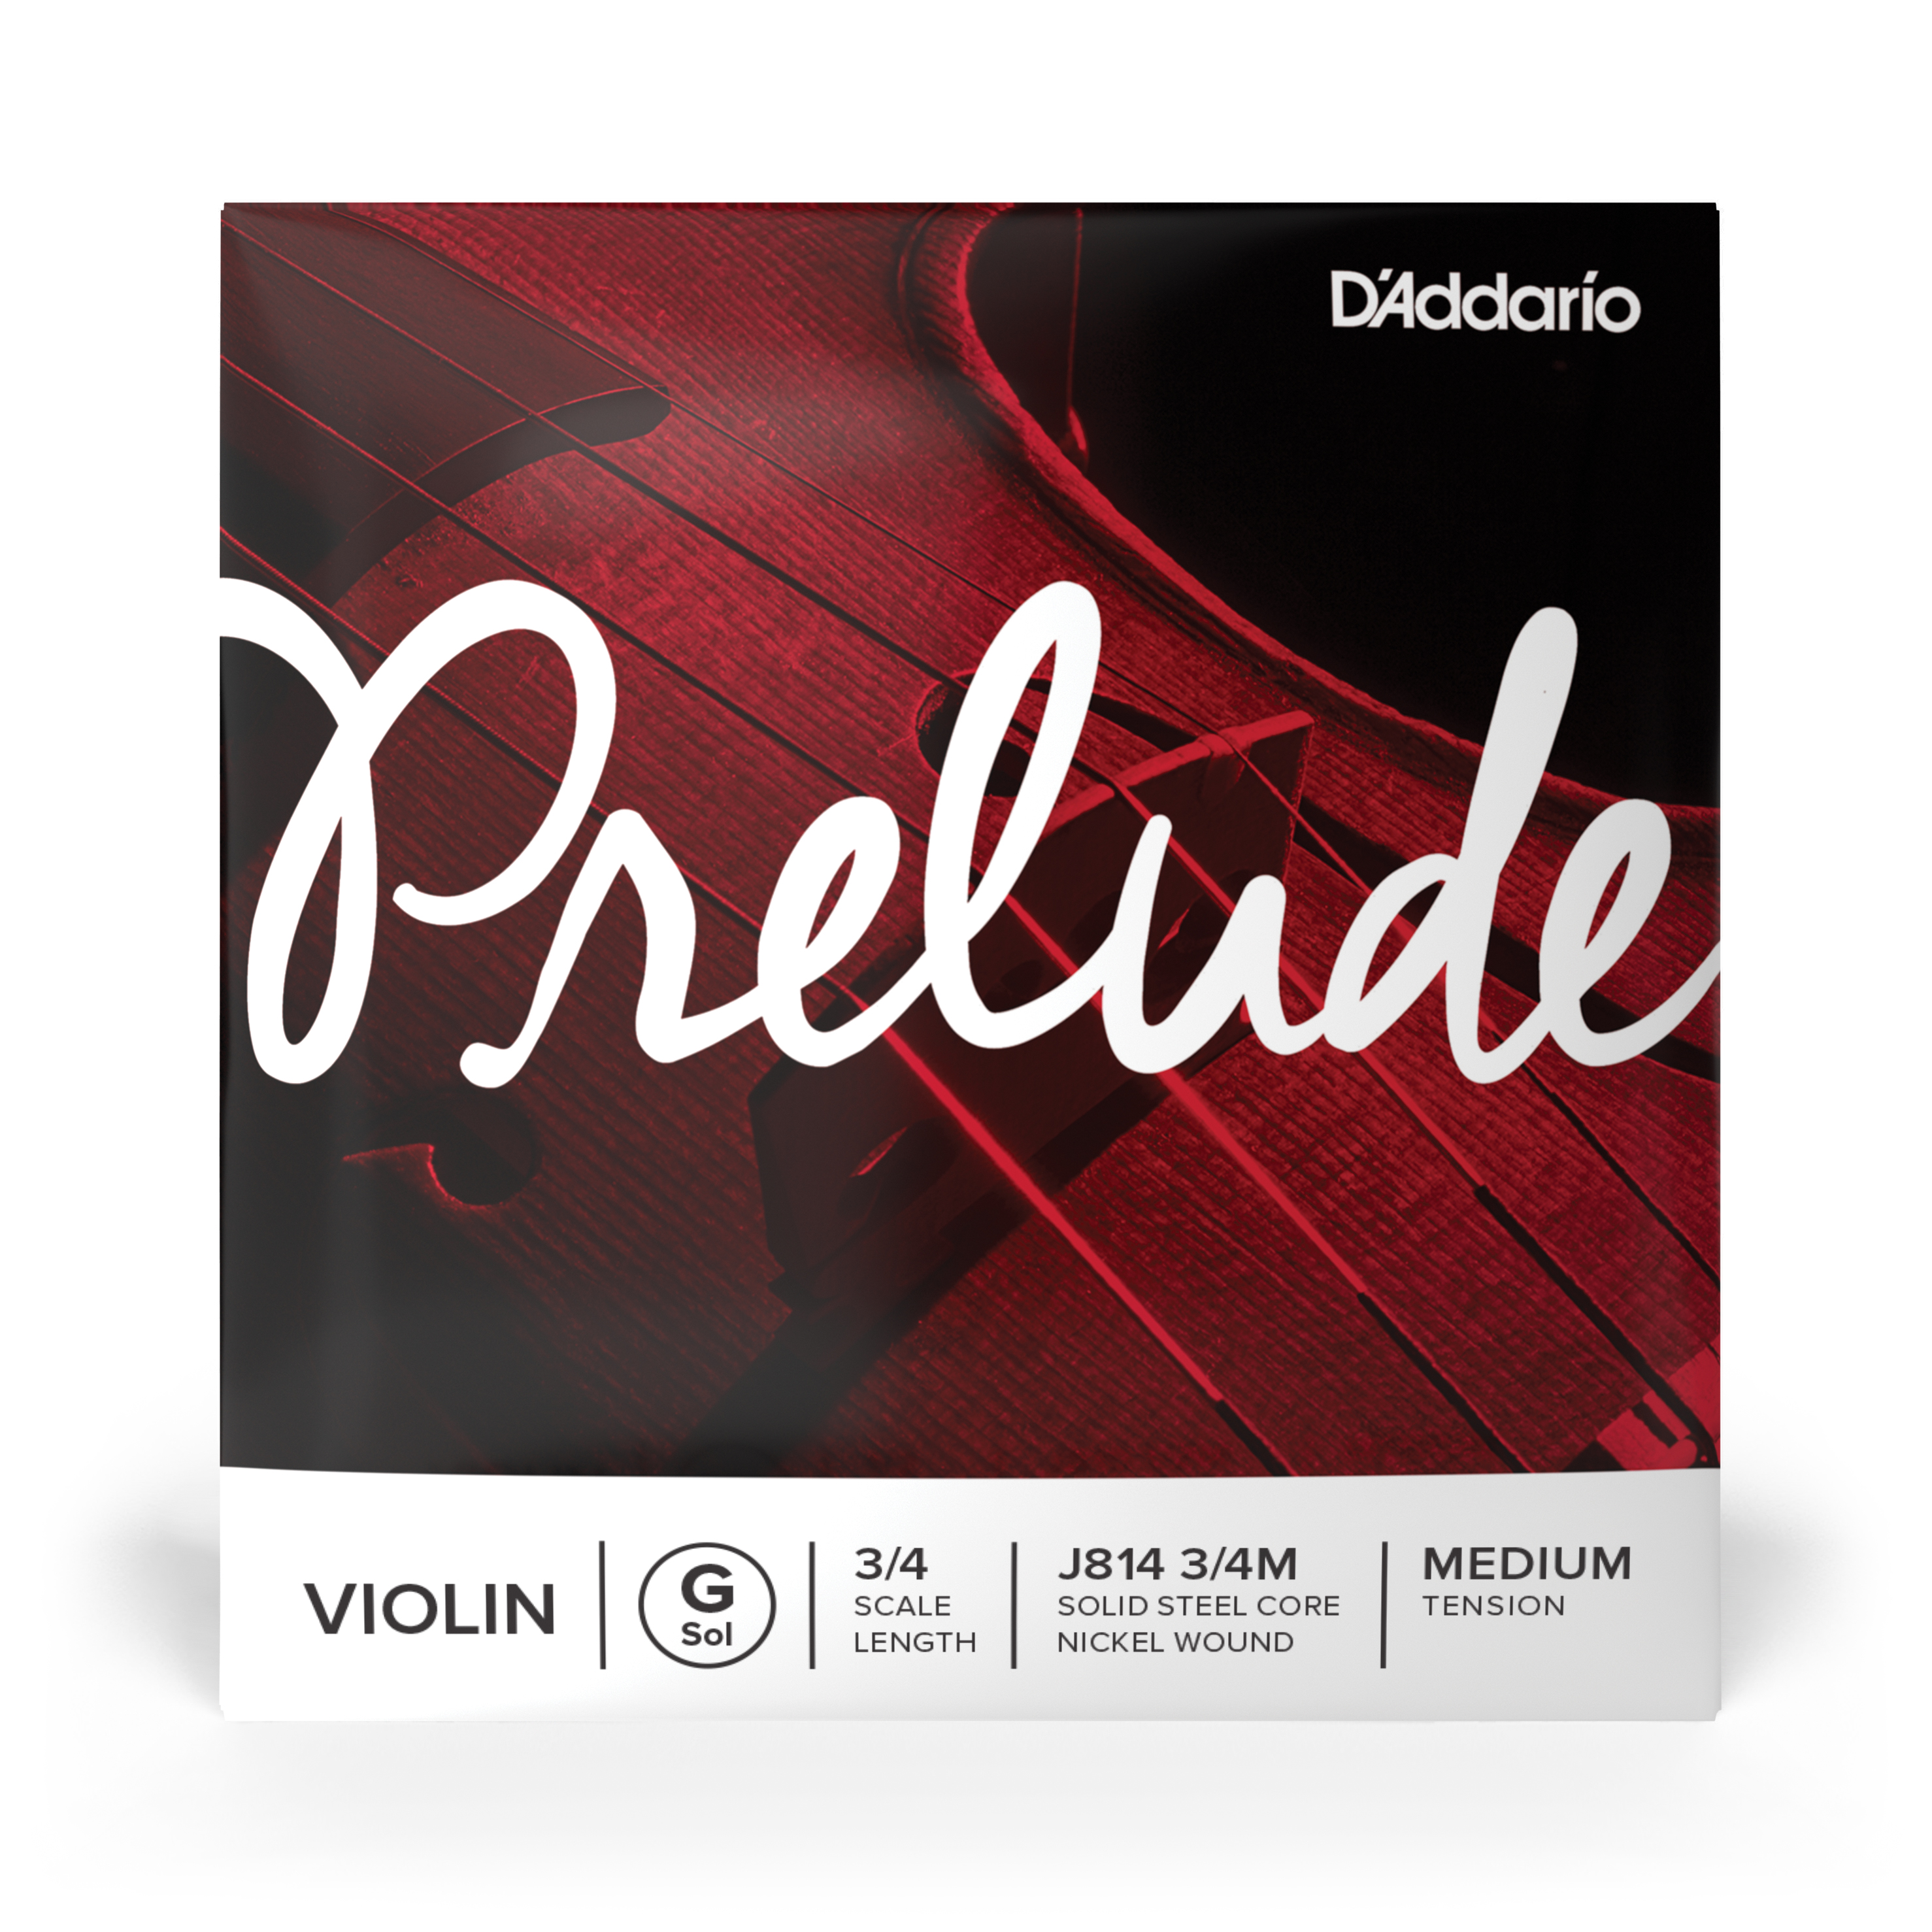 Daddario orchestral it J814 3/4m corda singola sol d'addario prelude per violino, scala 3/4, tensione media